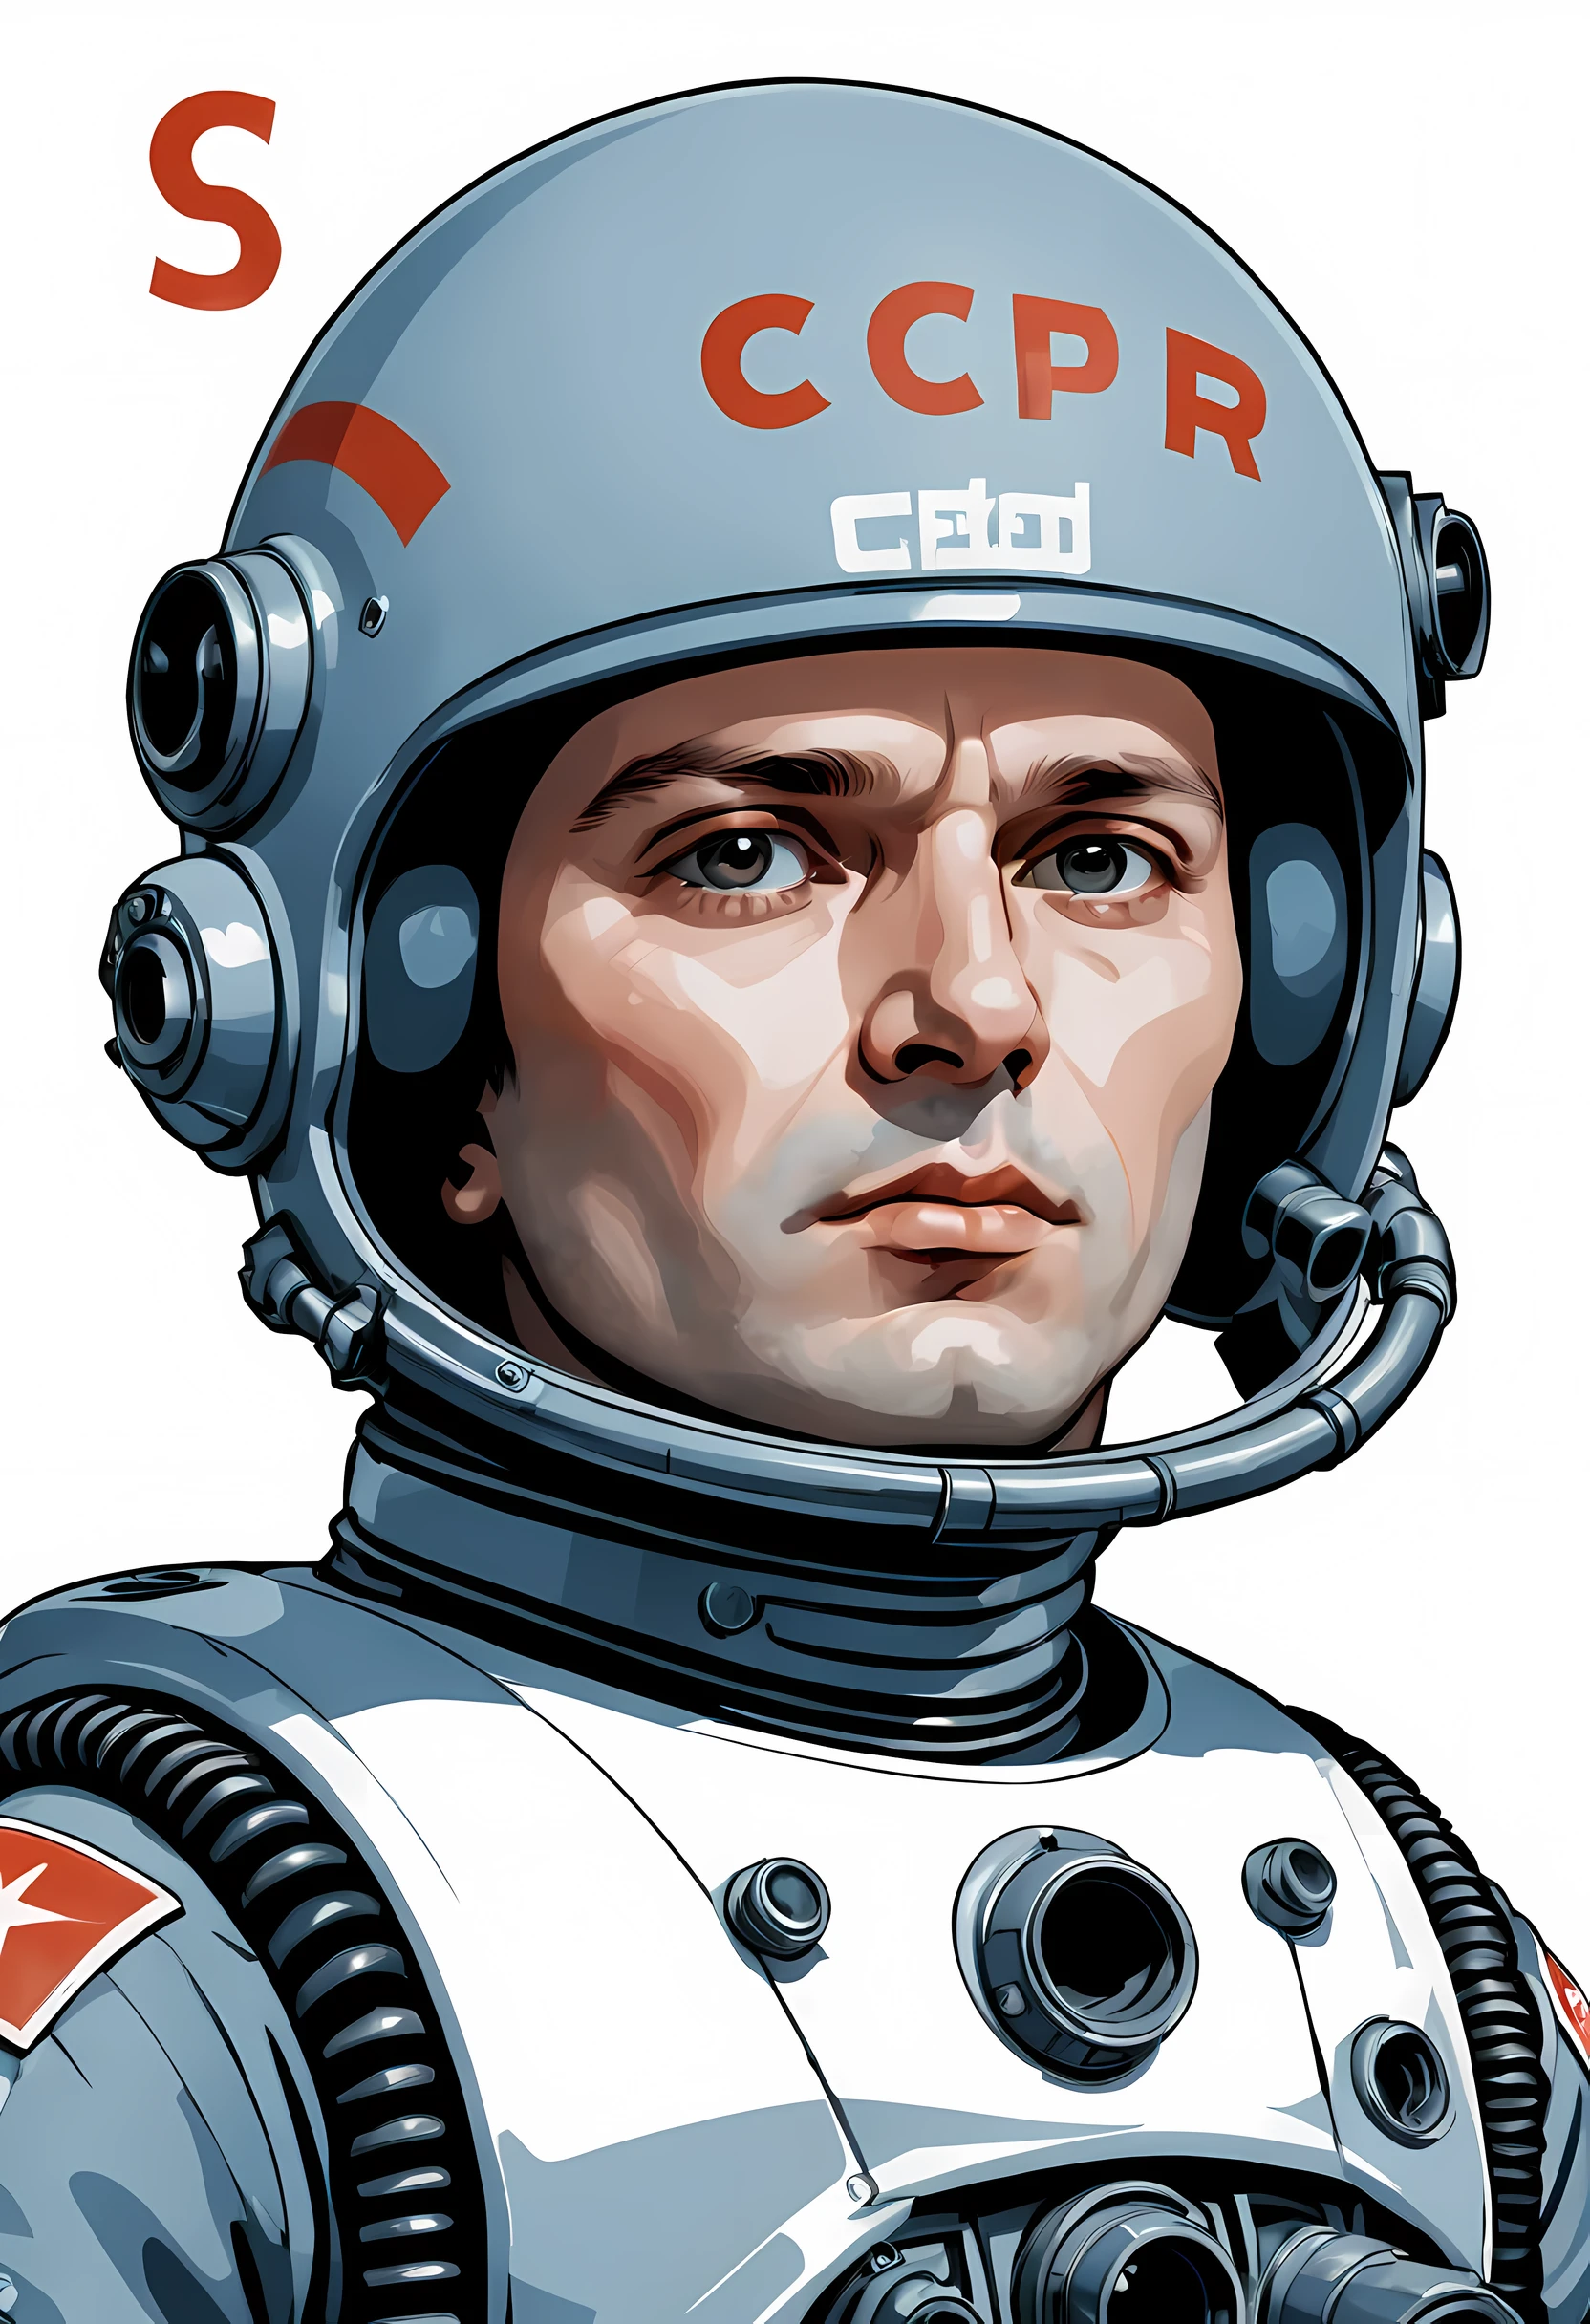 头像, космонавт 蘇聯 в шлеме Гигера, 字母 "蘇聯" 头盔上, 35歲男子嚴肅的臉, 從眉毛下面看, 手上臉上掛著一把神奇的爆能槍, 爆破槍筒升起